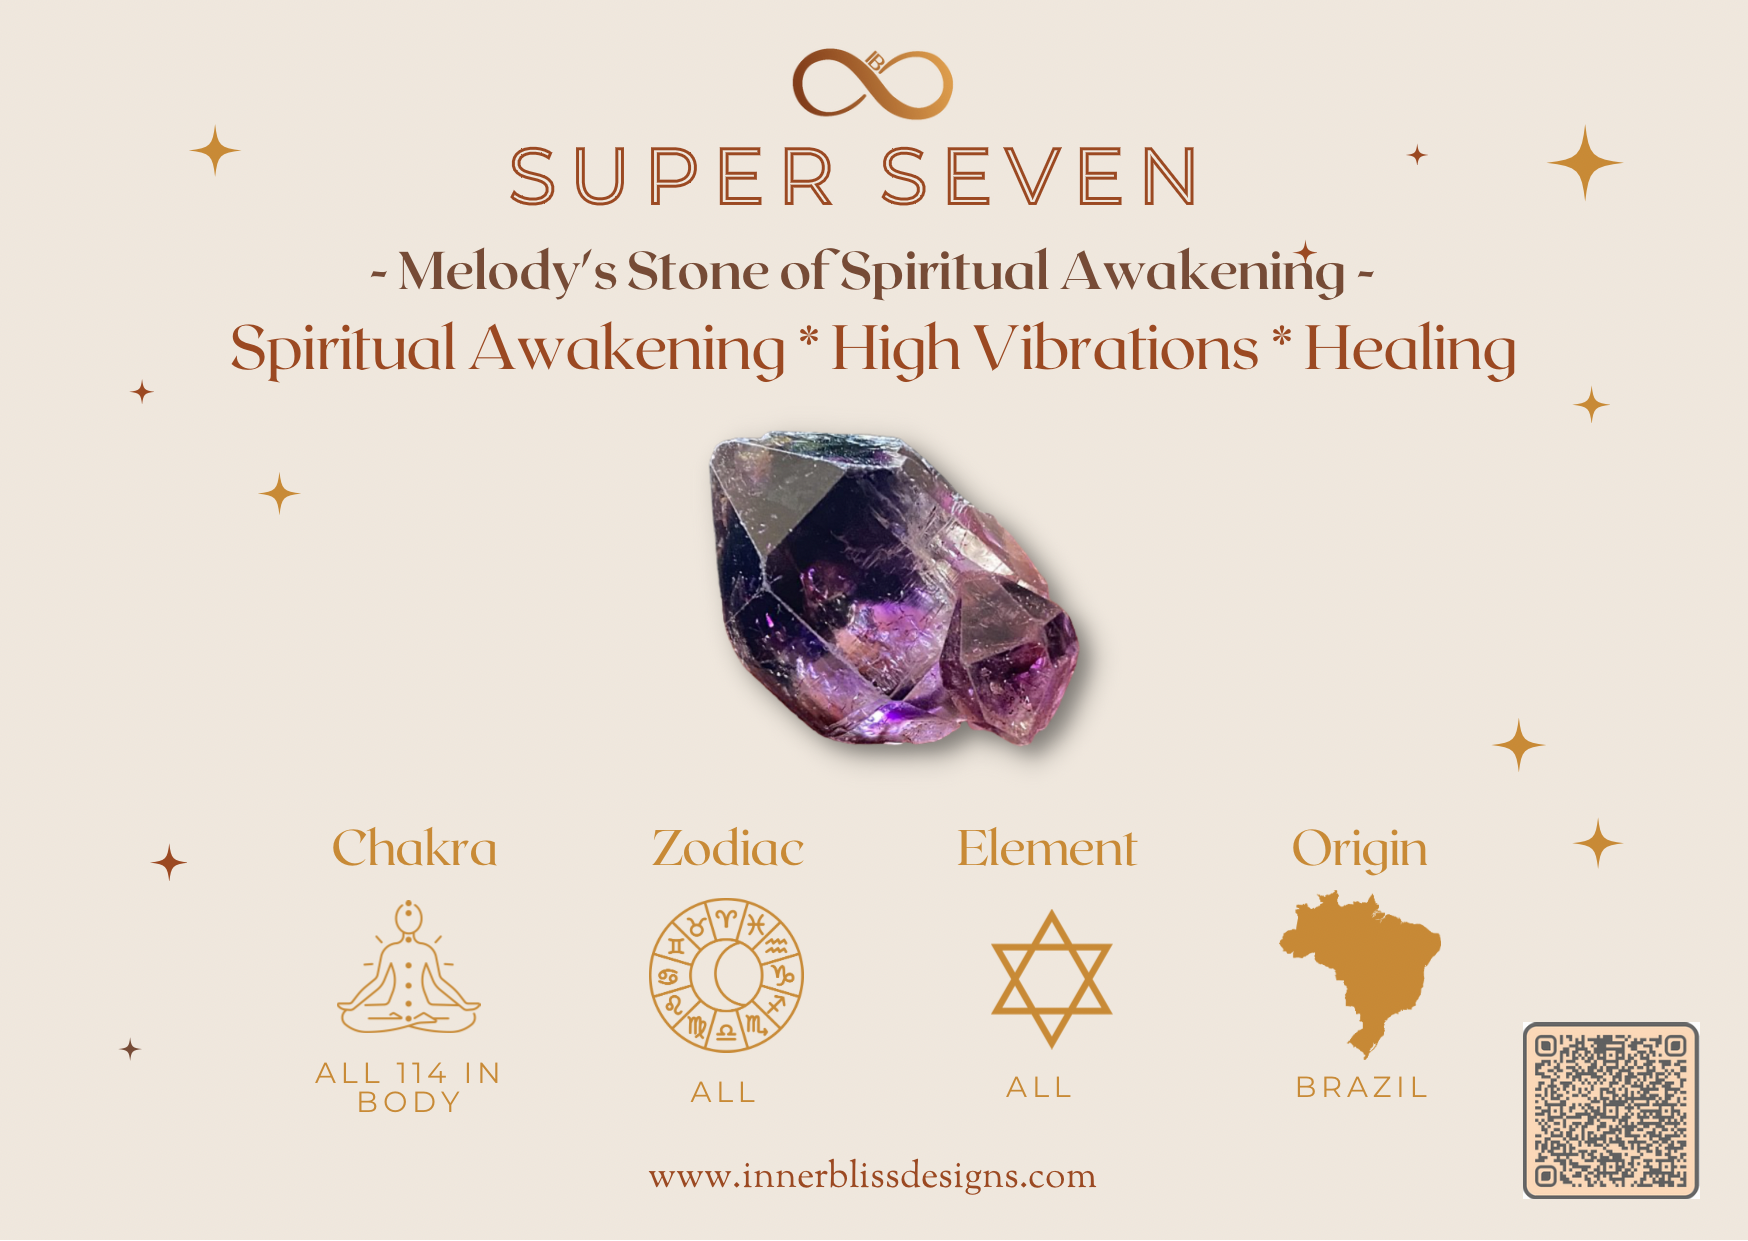 Benefits of Super Seven | Inner Bliss